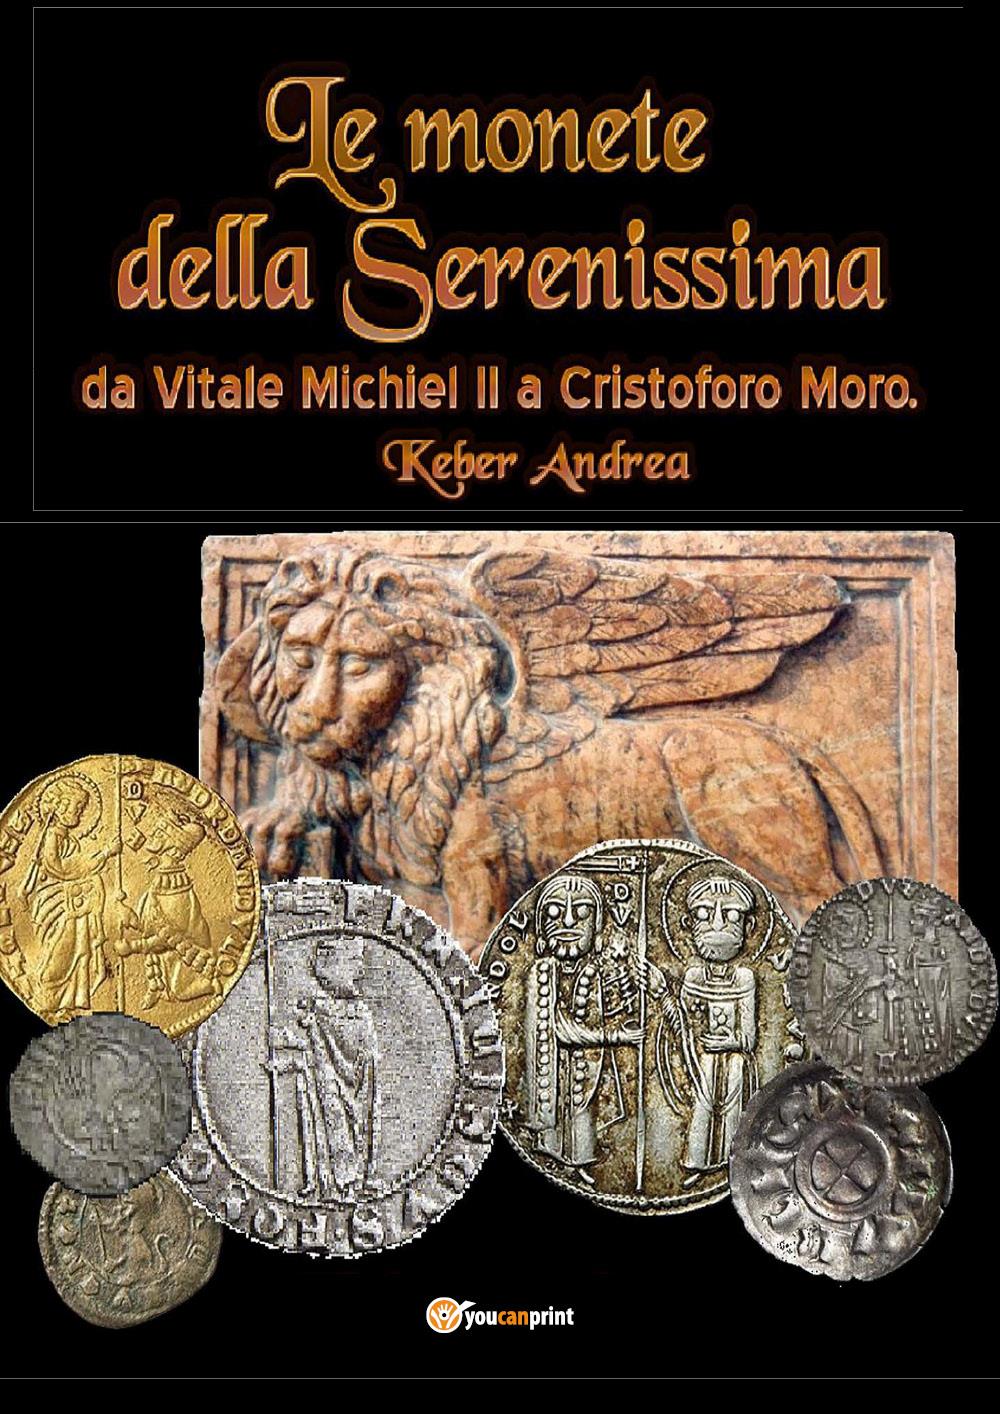 Le monete della Serenissima da Vitale Michiel II a Cristoforo Moro